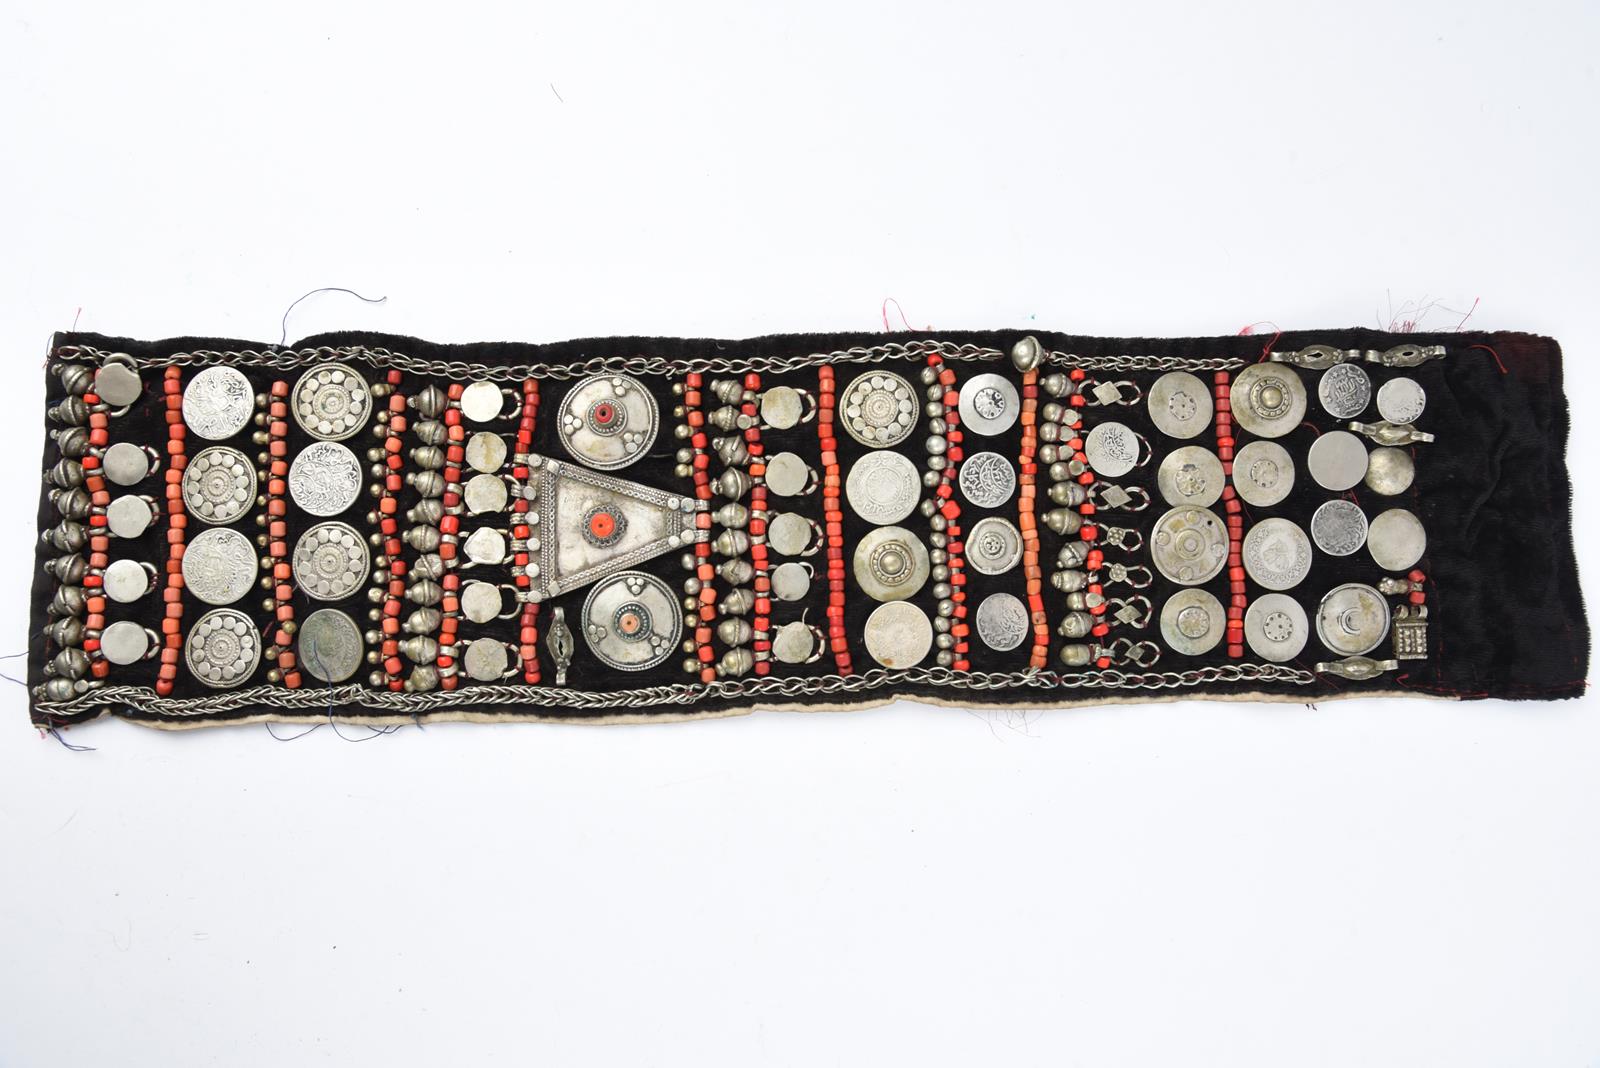 λA Bedouin amulet chest ornament cloth with numerous sewn on amulets and beads, 62cm long, and three - Image 16 of 27